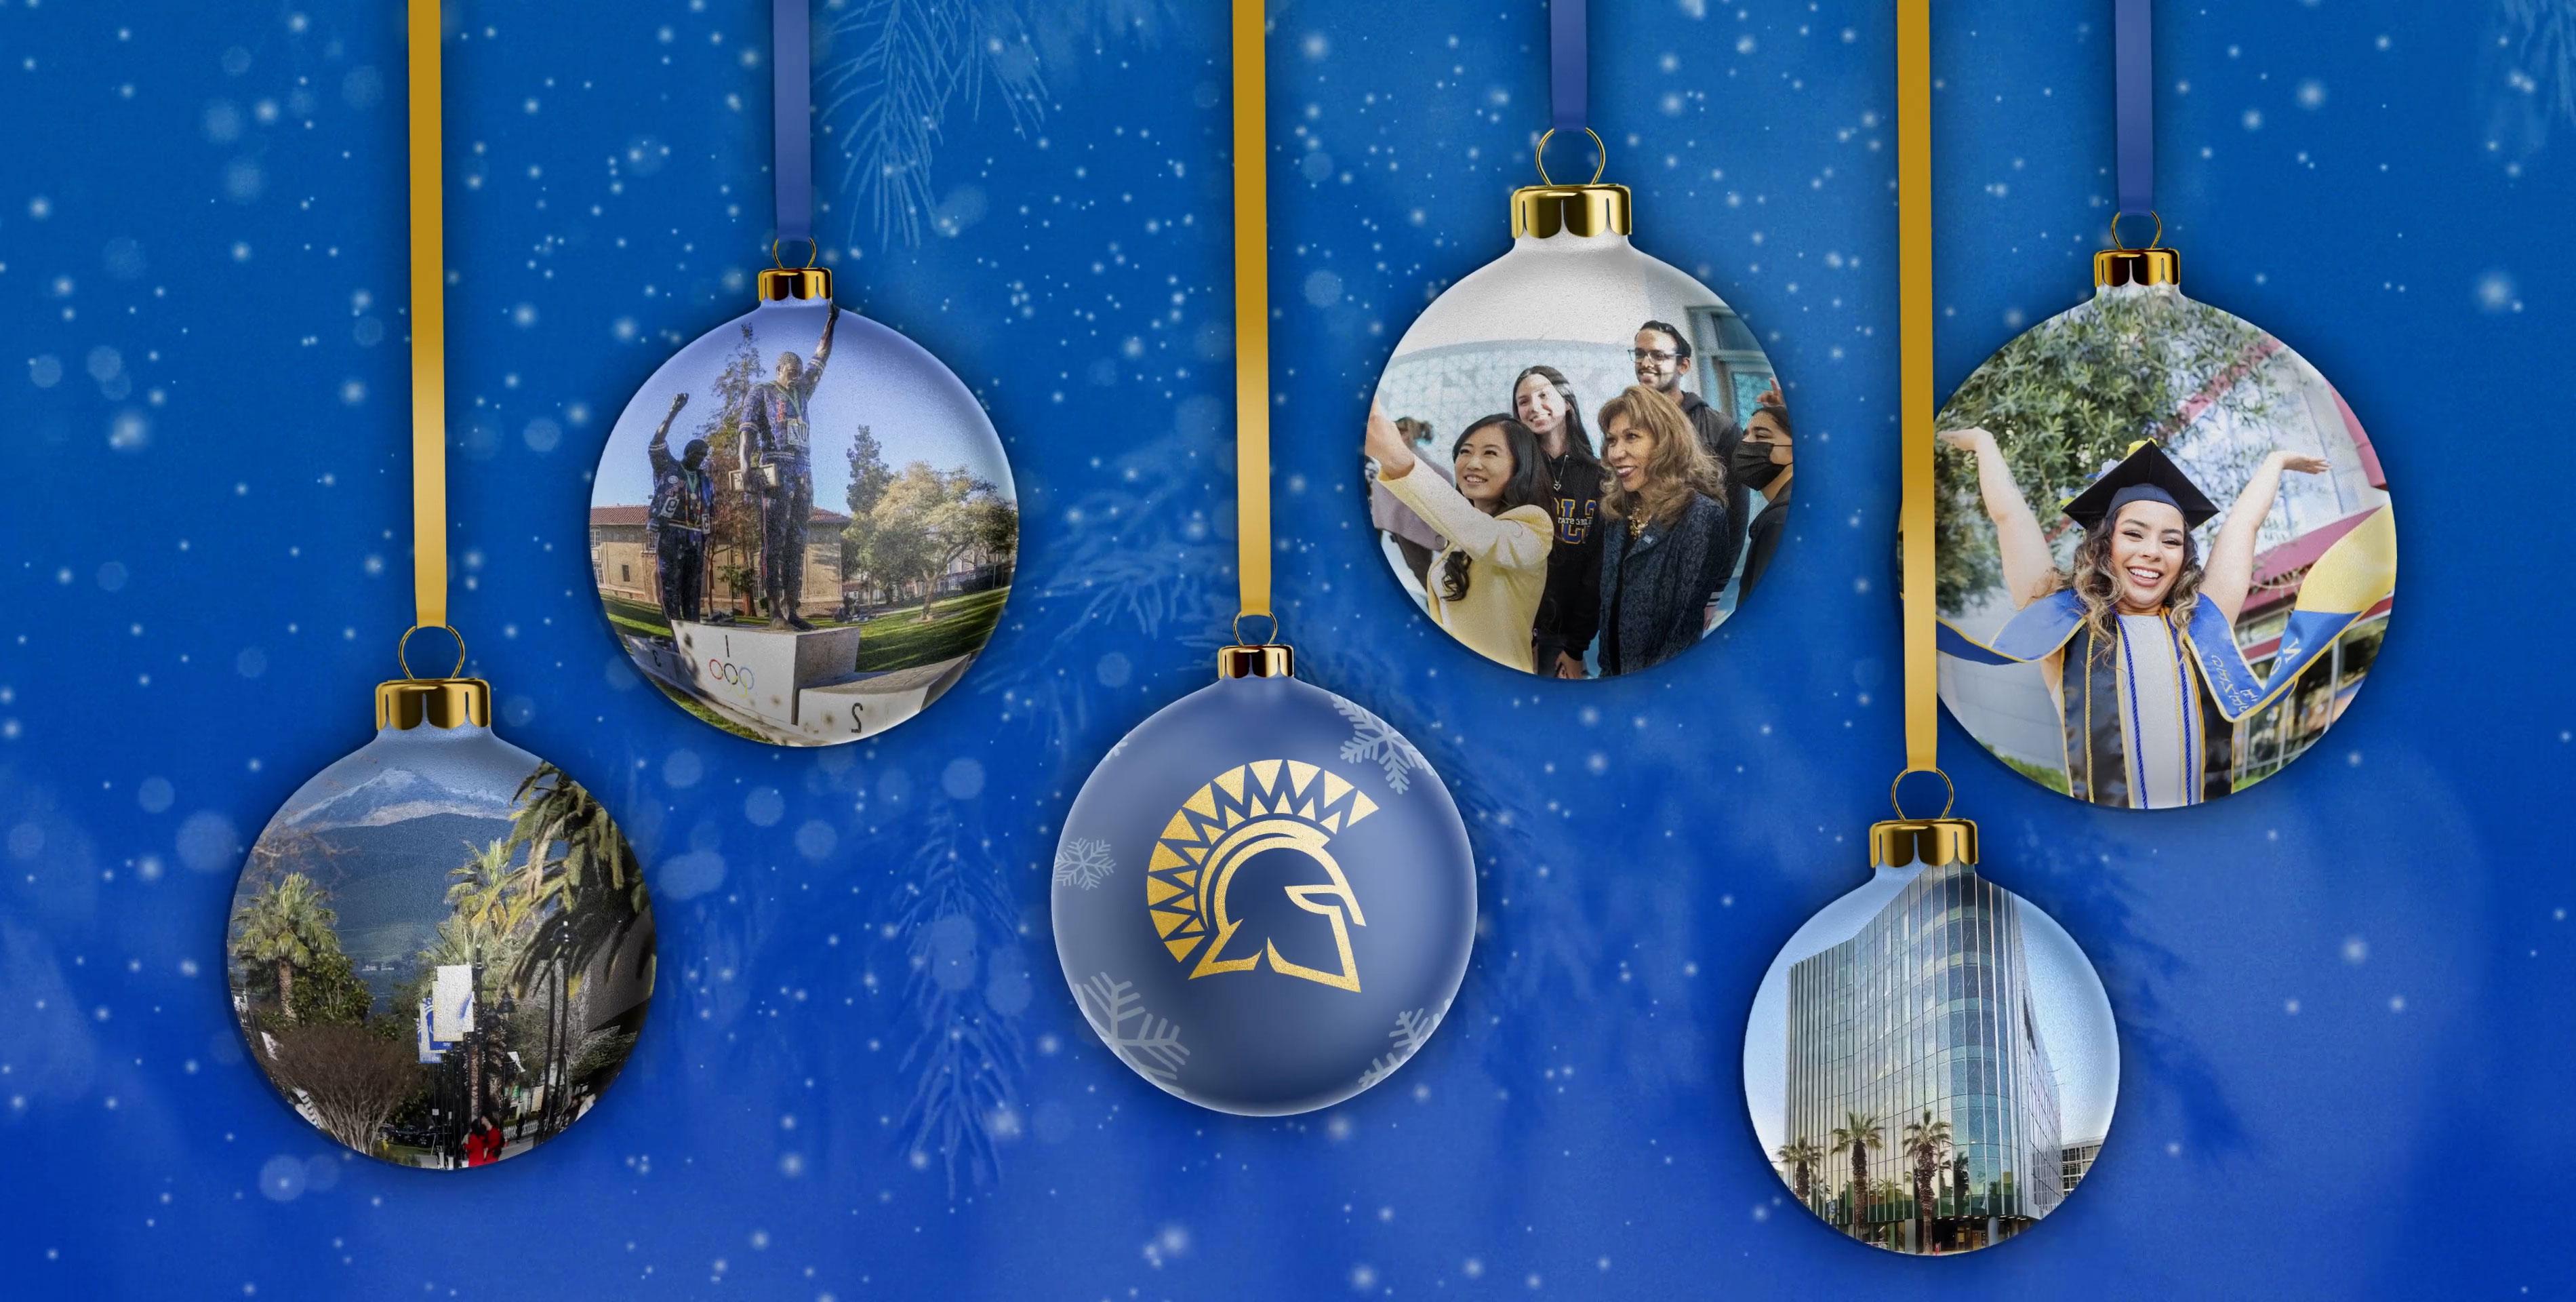 圣诞树上的装饰品悬挂在飘落的蓝色雪花背景上, 每个装饰品都有一张照片，突出了校园里的时刻.